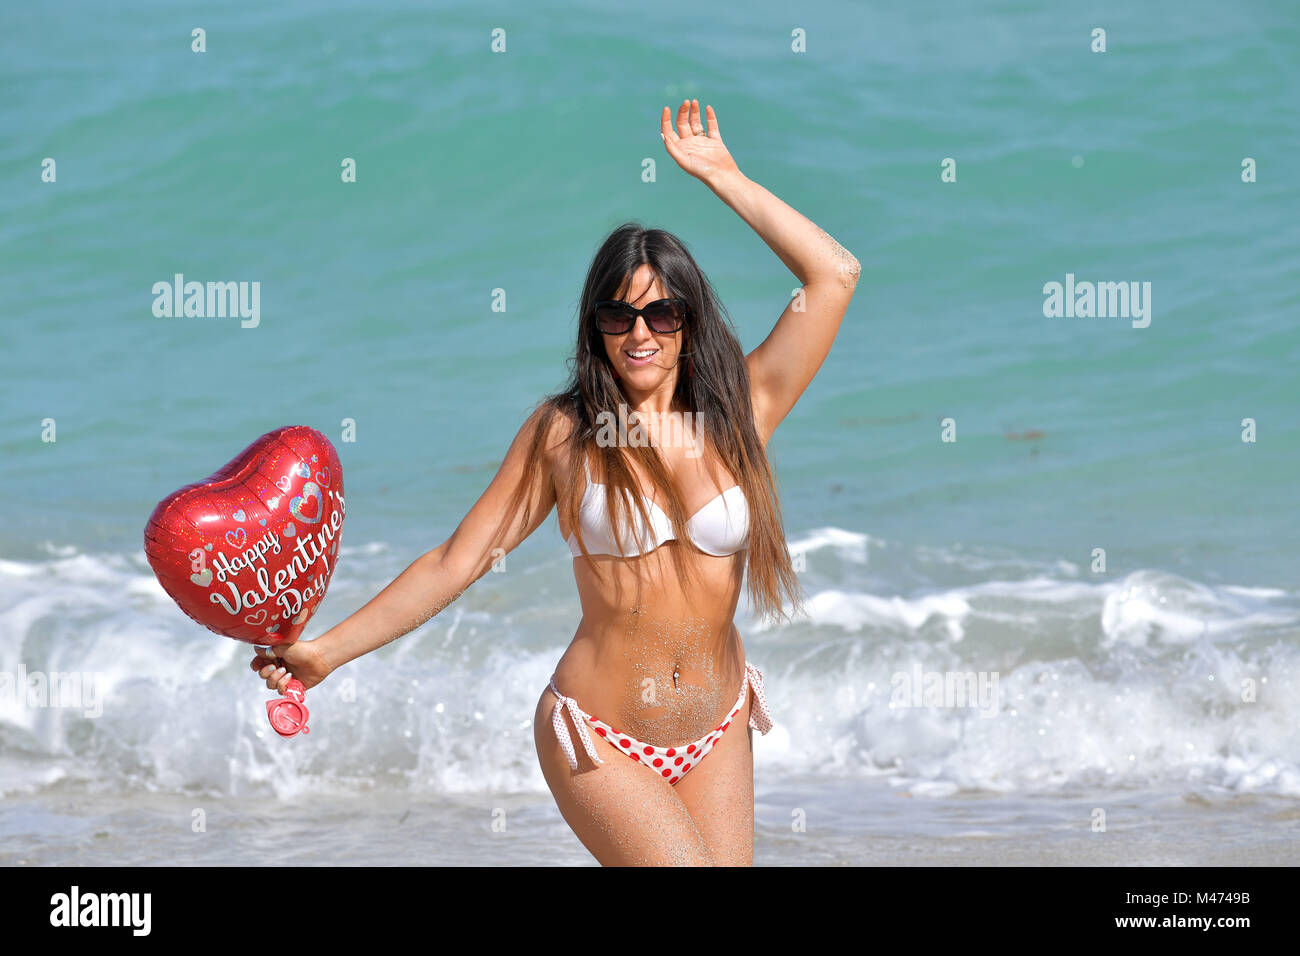 Miami Beach, FL, USA. Feb 14, 2018. (La couverture exclusive) star de  télé-réalité française Secret Story 9 et vainqueur de la fille brune de  l'année 2016 pour Playboy en Italie. Claudia Romani